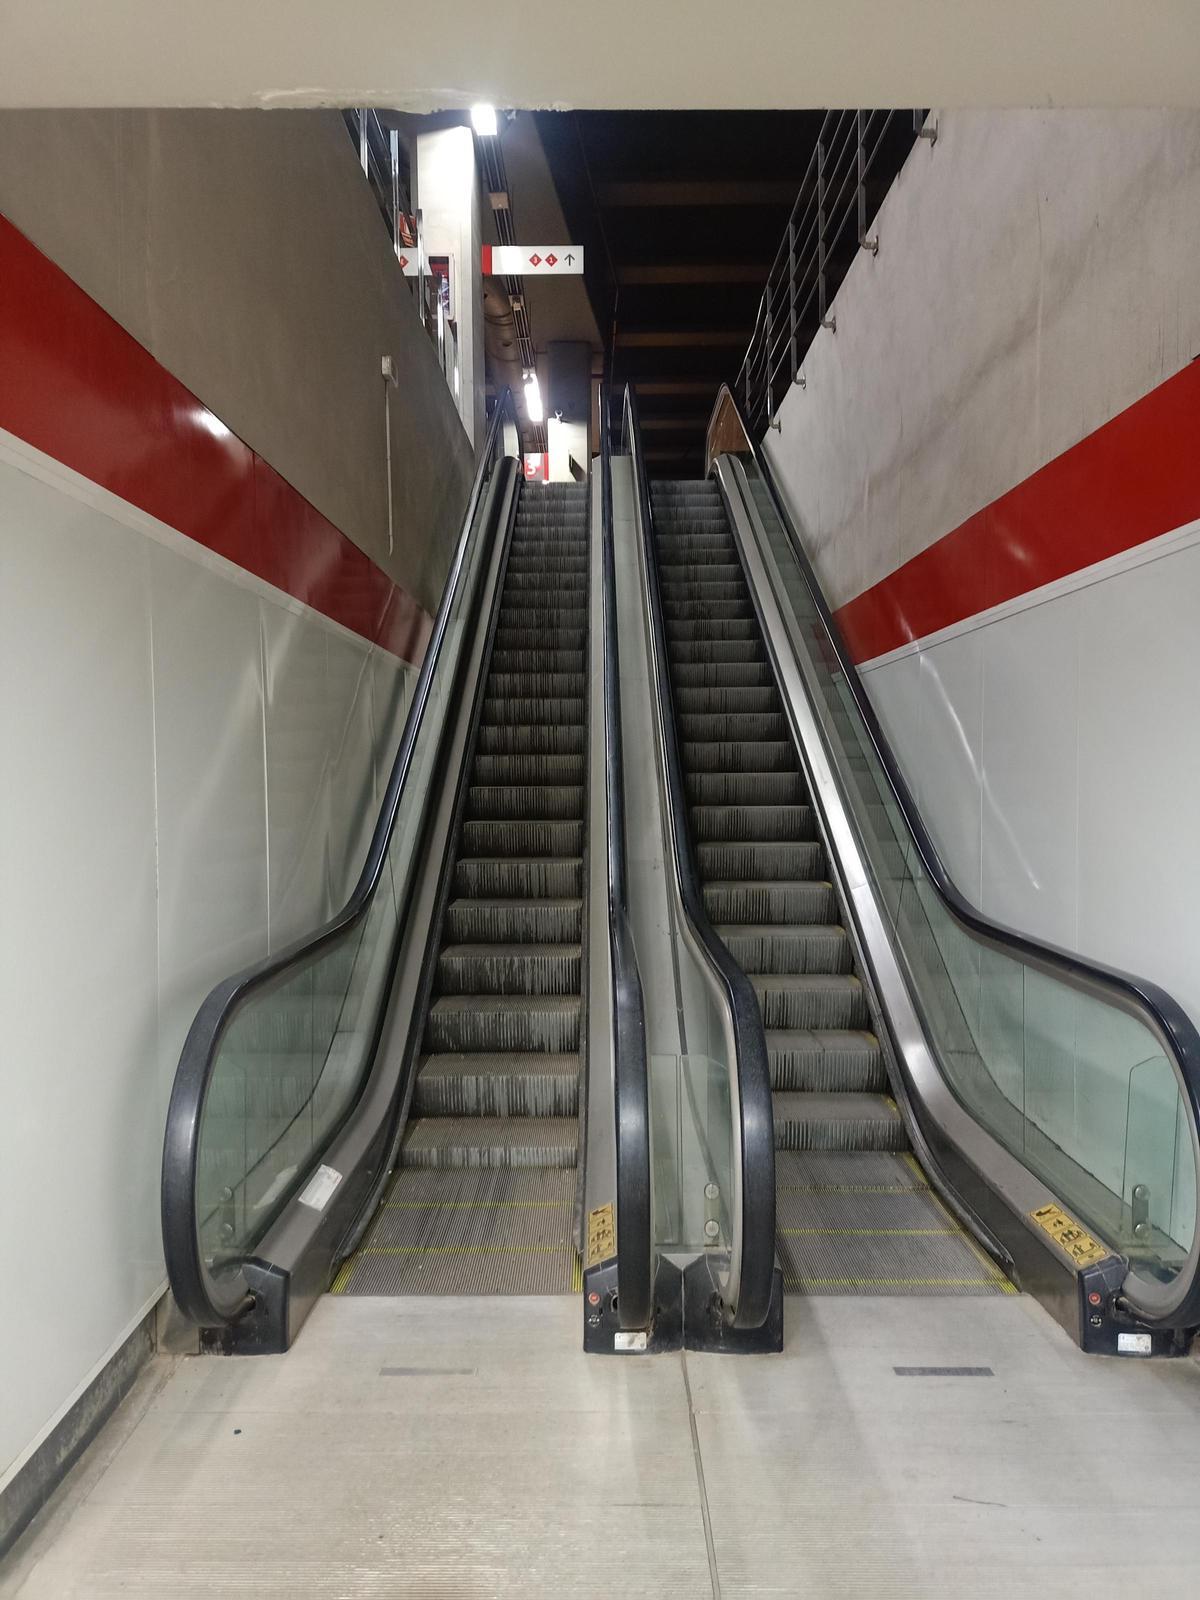 Las escaleras mecánicas de la Estación Miraflores no funcionan